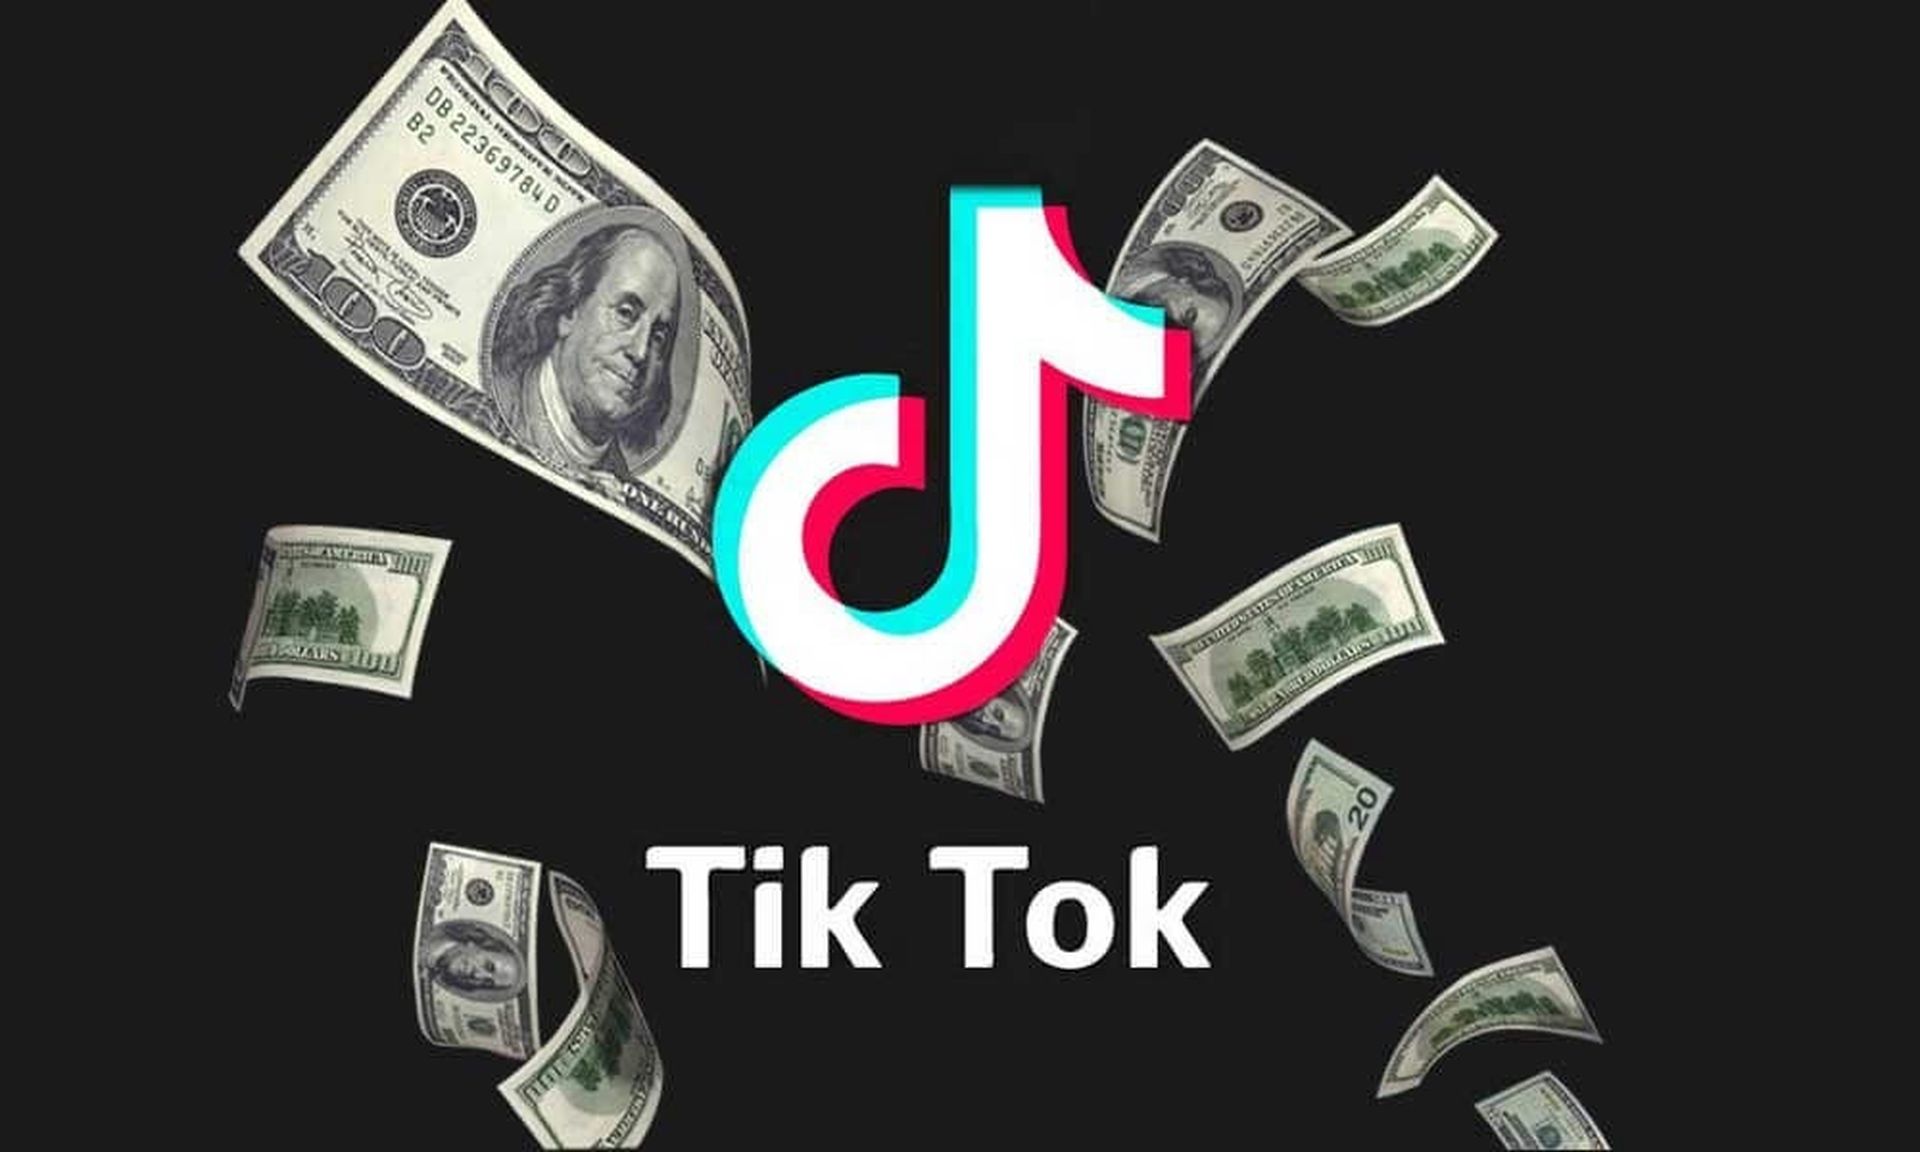 今日は、TikTok計算機Exolytとは何かをお伝えします。これは、インフルエンサーになってお金を稼ぐための分析ツールです。